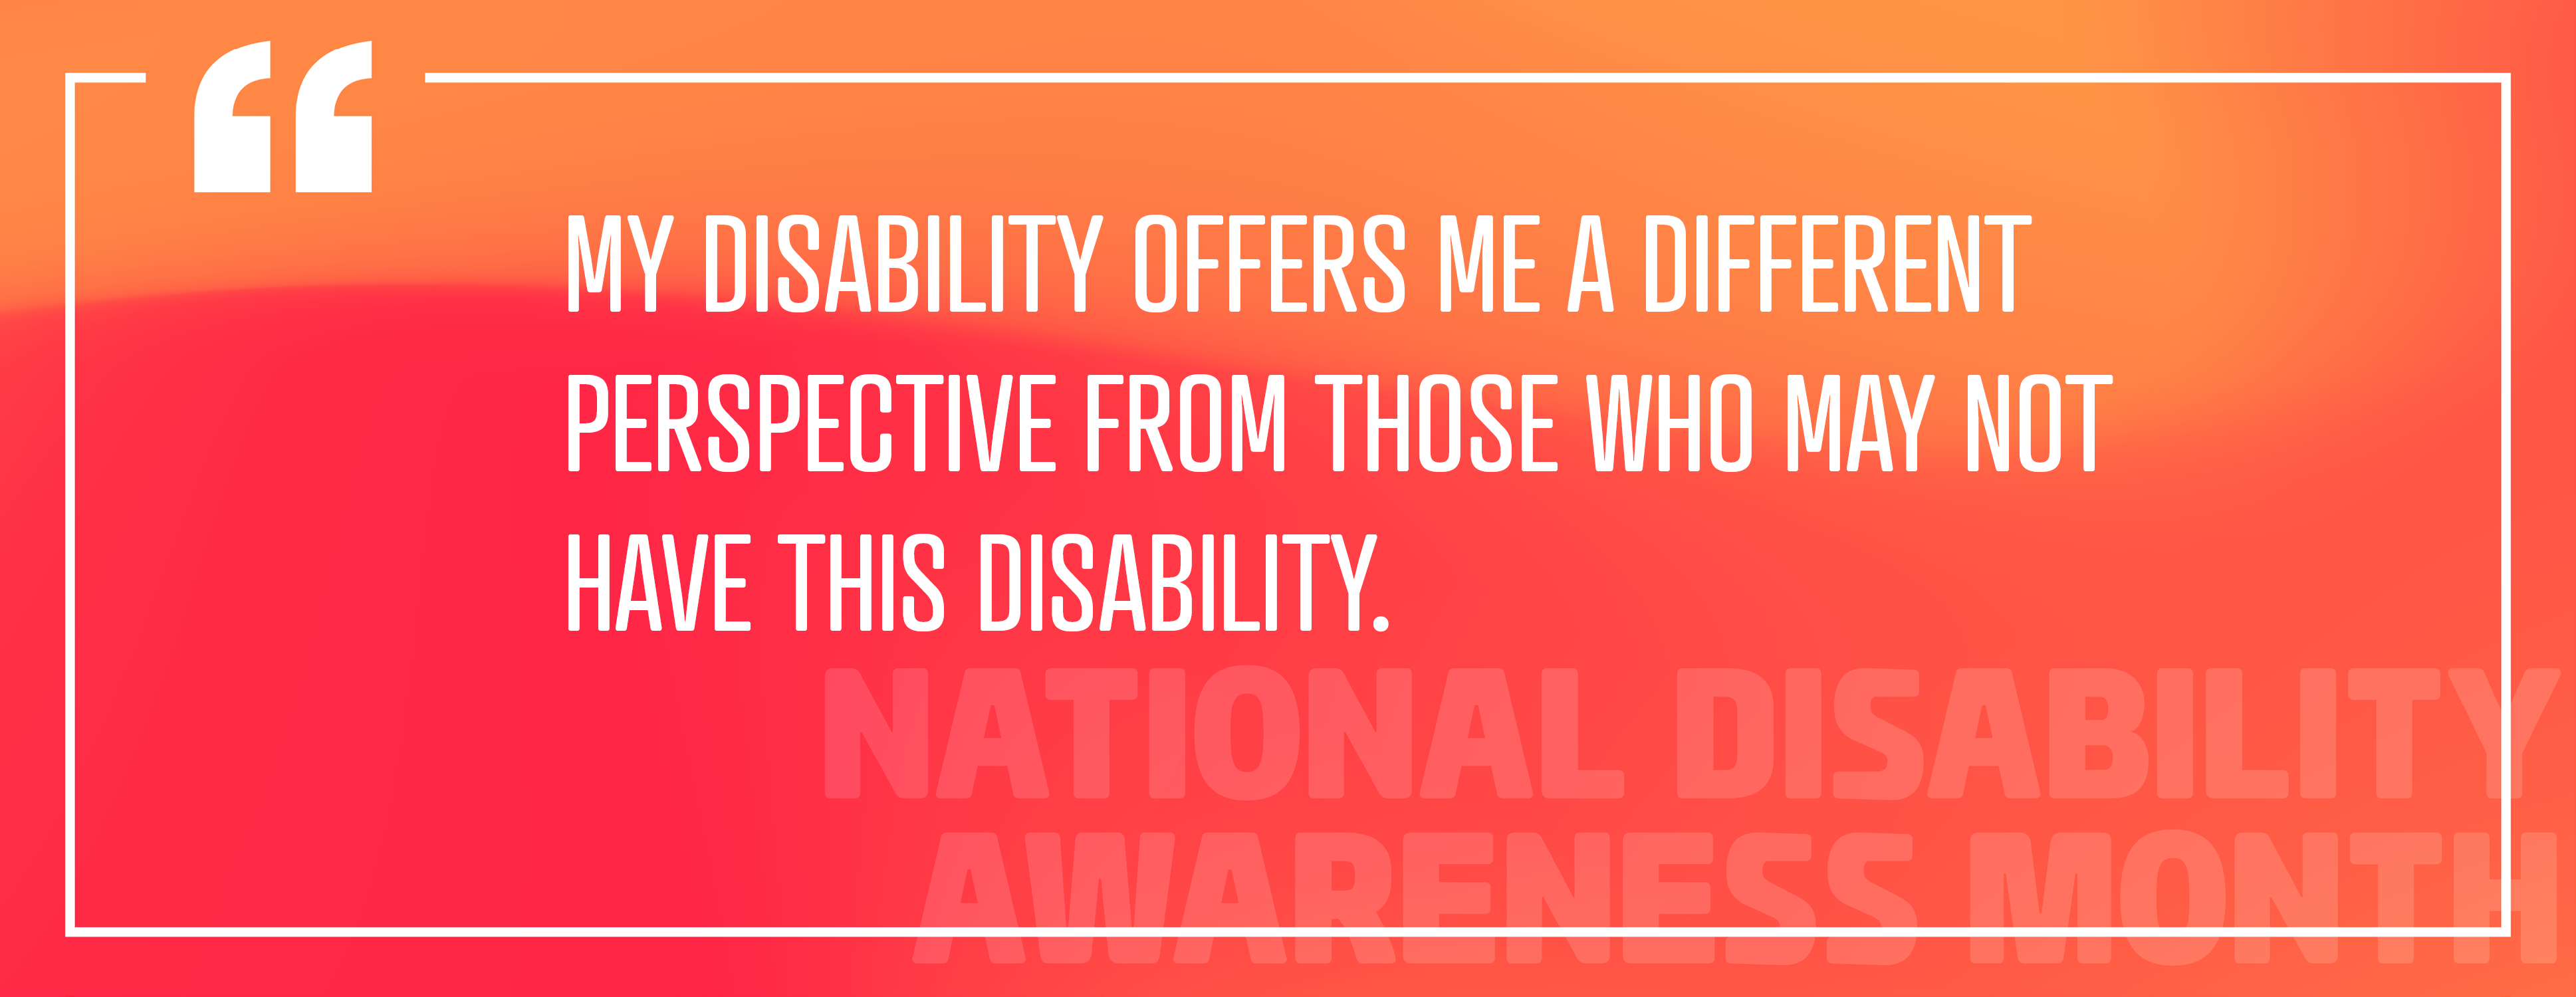 Зображення 2: «Моя інвалідність пропонує мені іншу точку зору, ніж ті, хто може не мати цієї інвалідності».